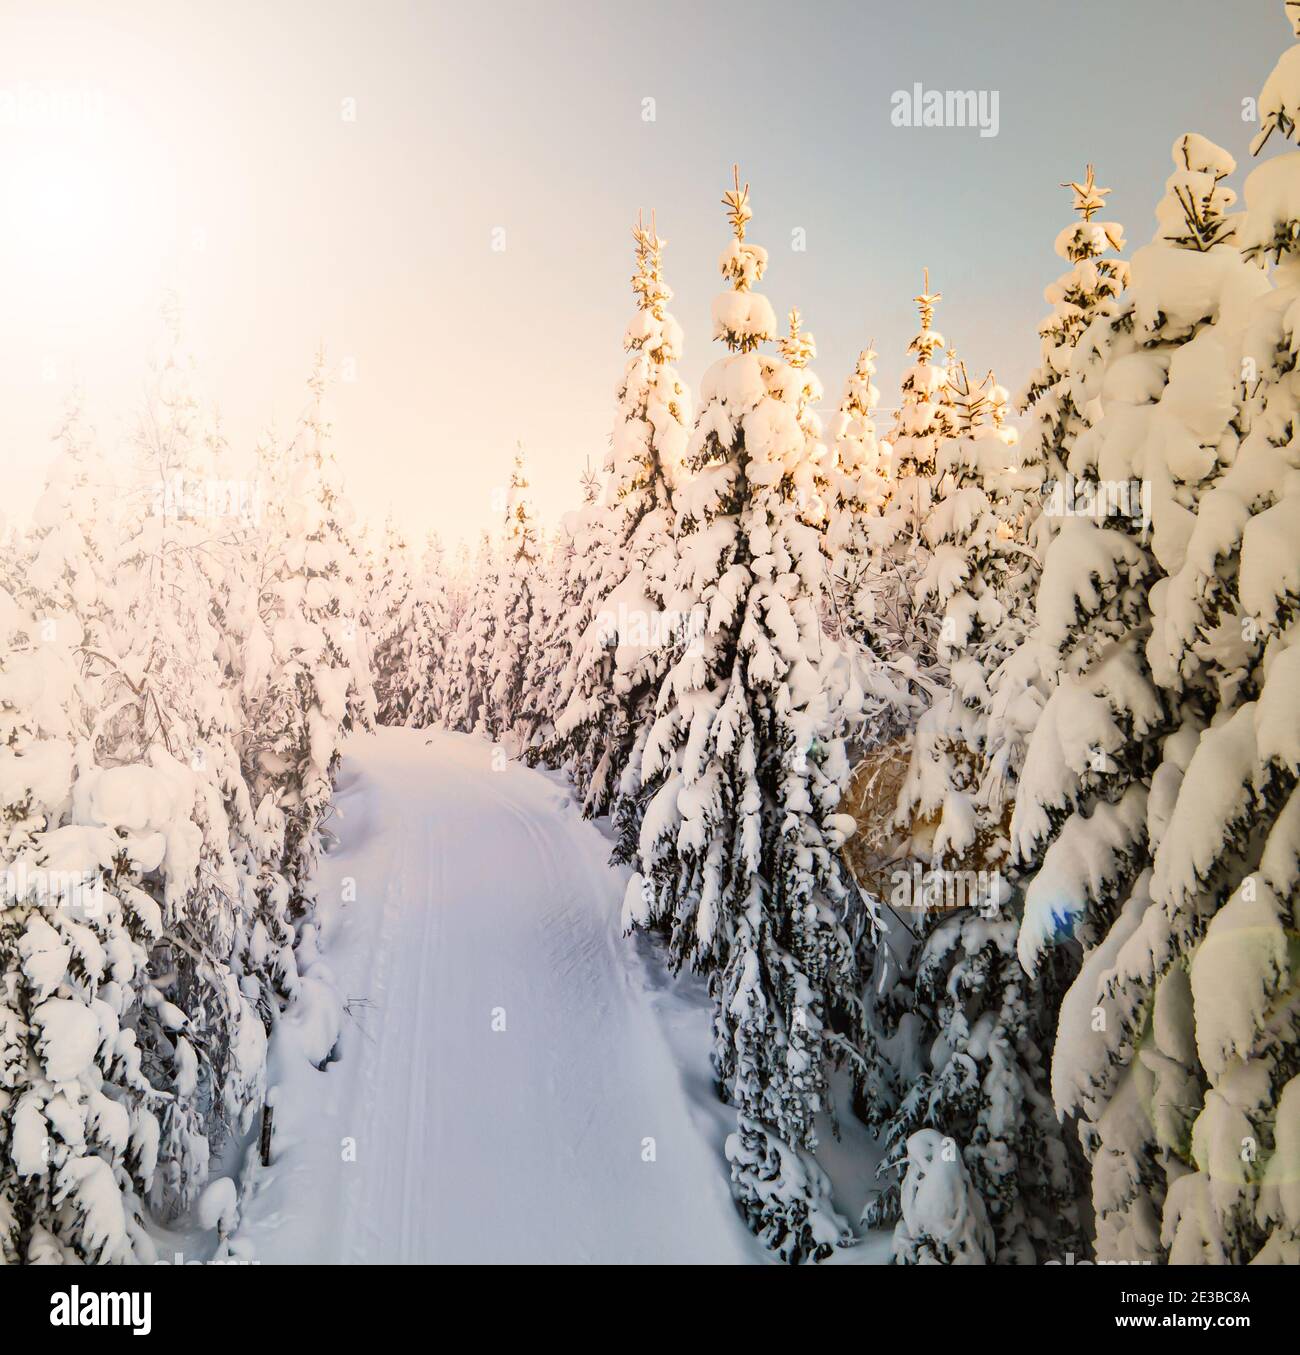 Langlaufloipe, die durch einen schneebedeckten Pinienwald führt. Stockfoto